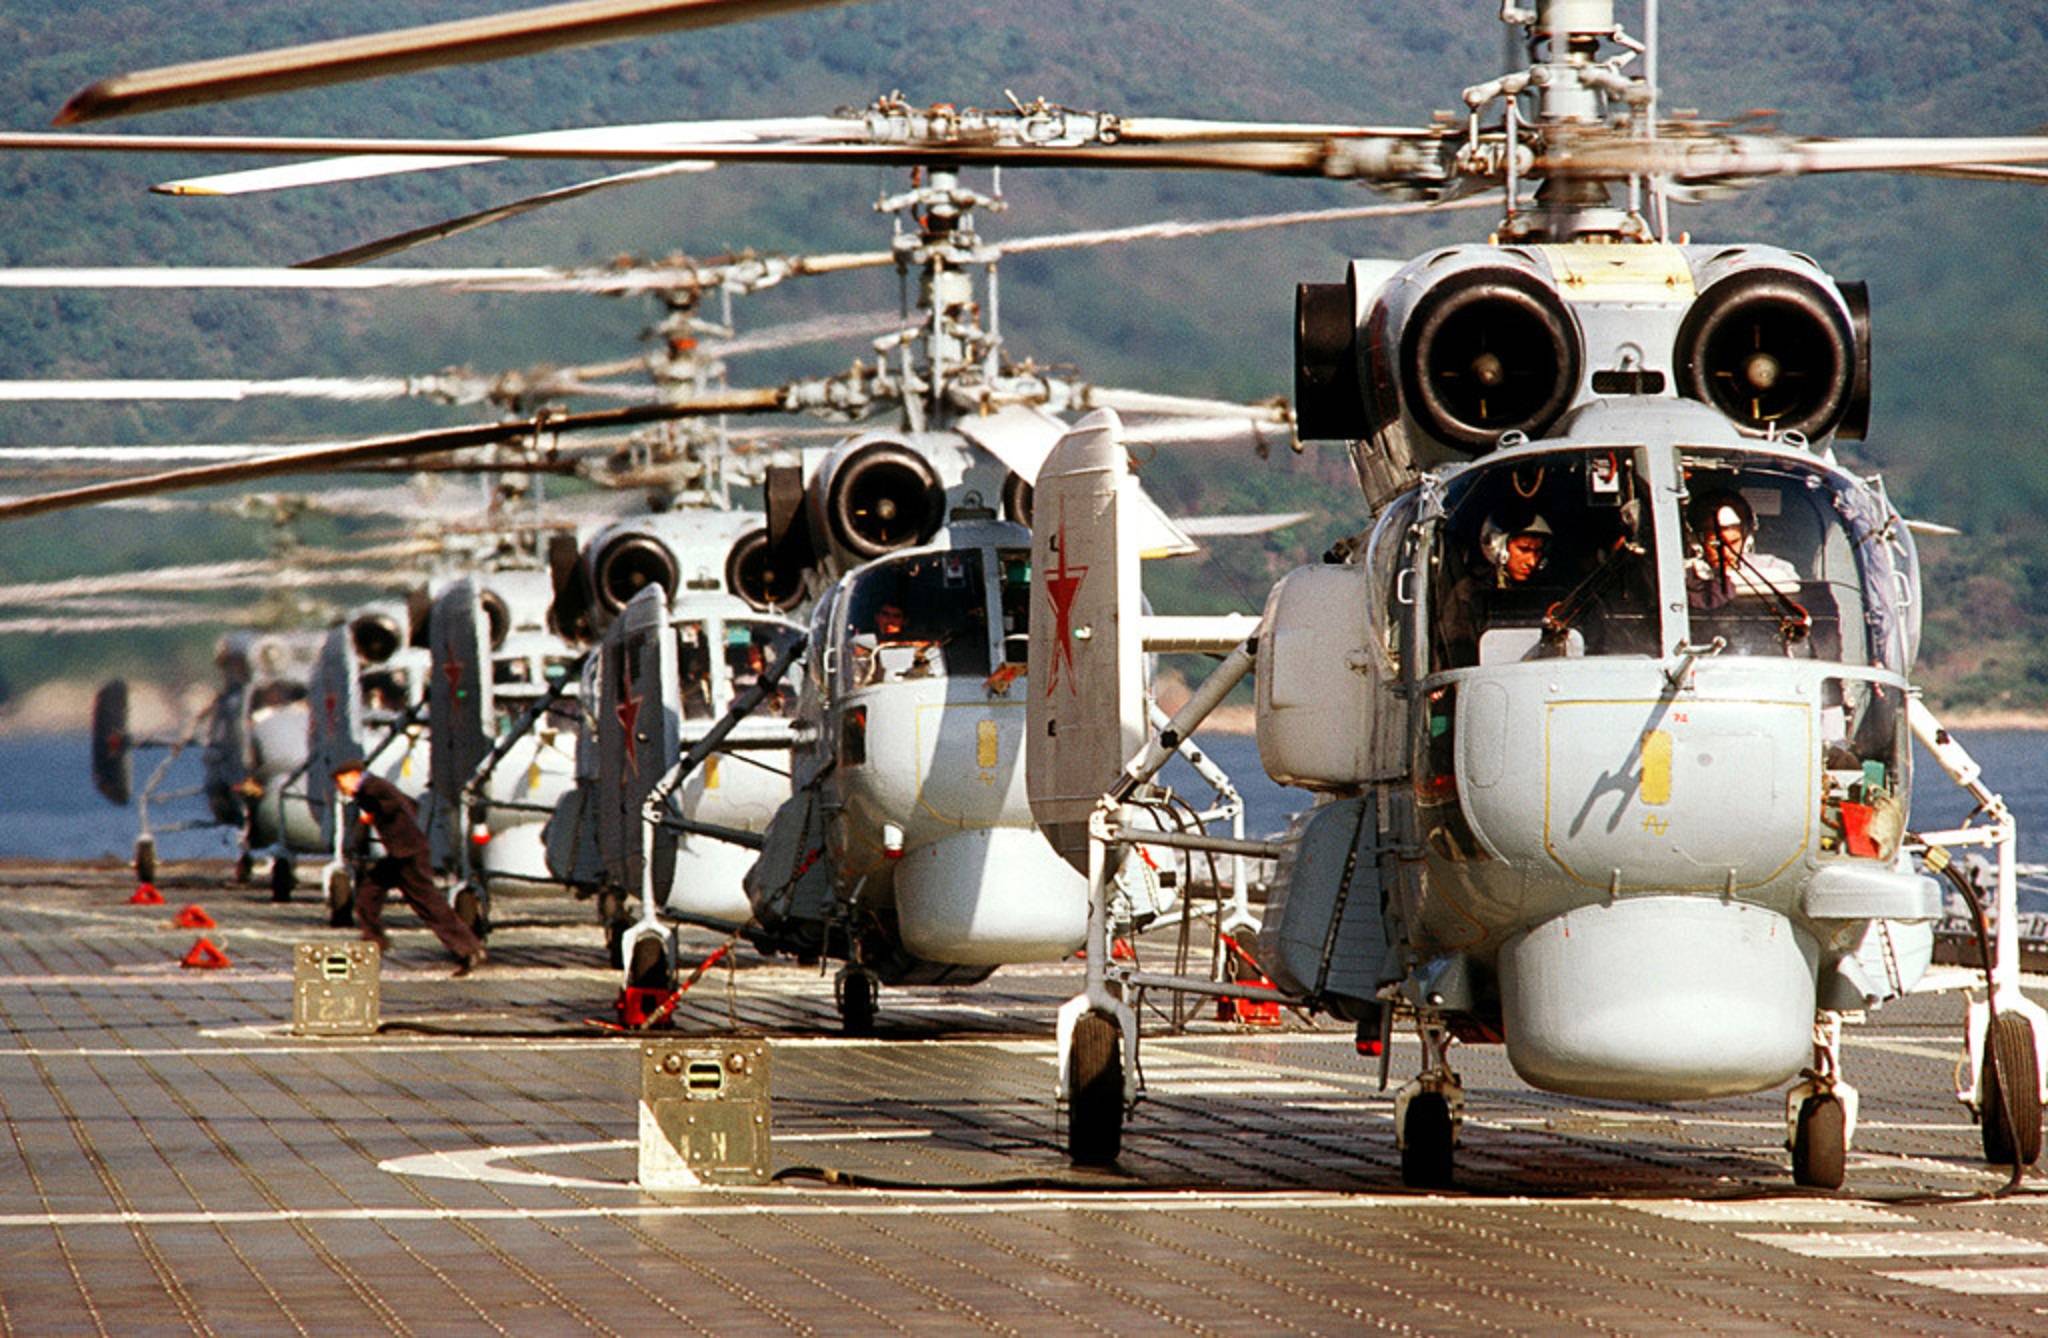 Ка 27 вертолет, палубная боевая противолодочная машина, описание, ттх и вооружение, особенности конструкции и серийное производство